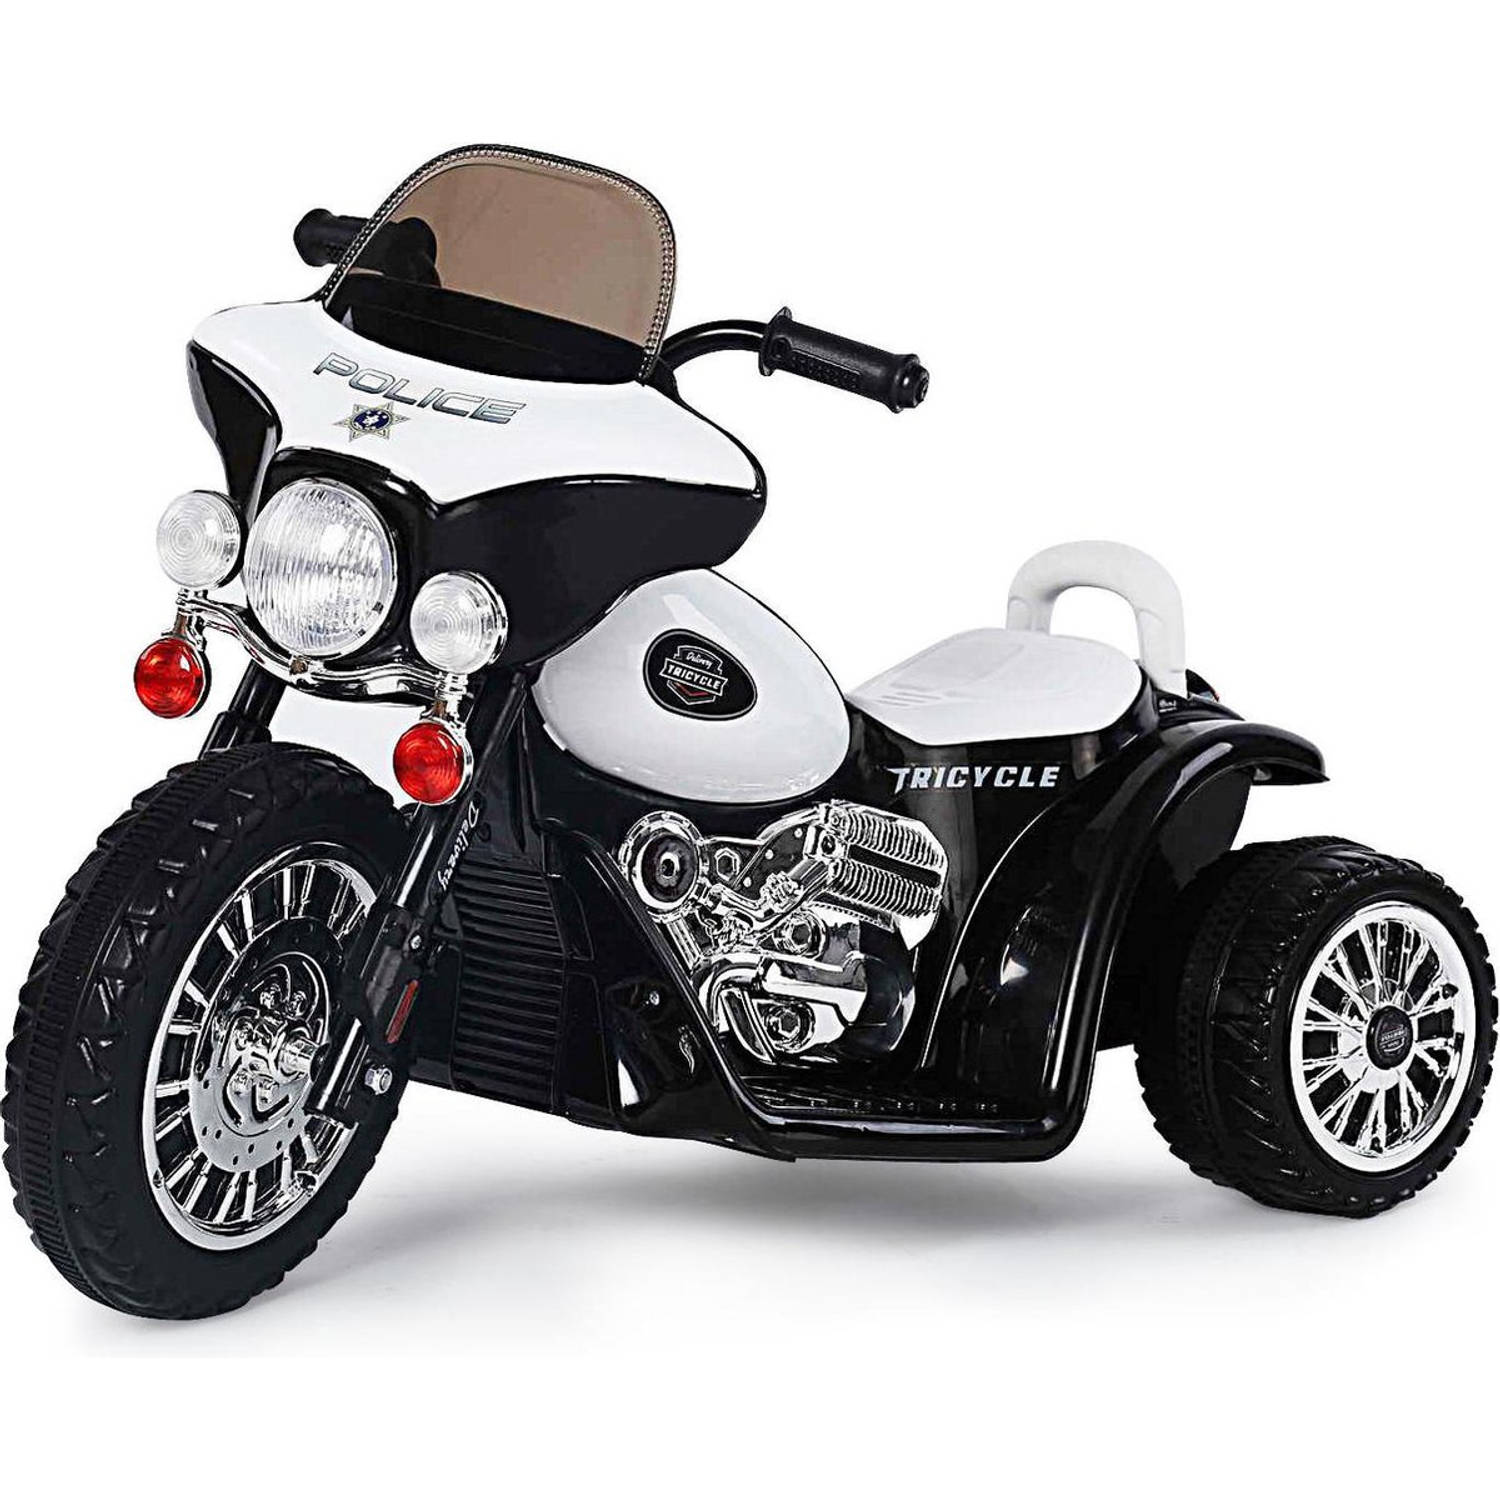 Elektrische politie chopper - trike - motor voor kinderen tot 25kg max 1-3 km/h zwart - kids motor - kindermotor - politiemotor